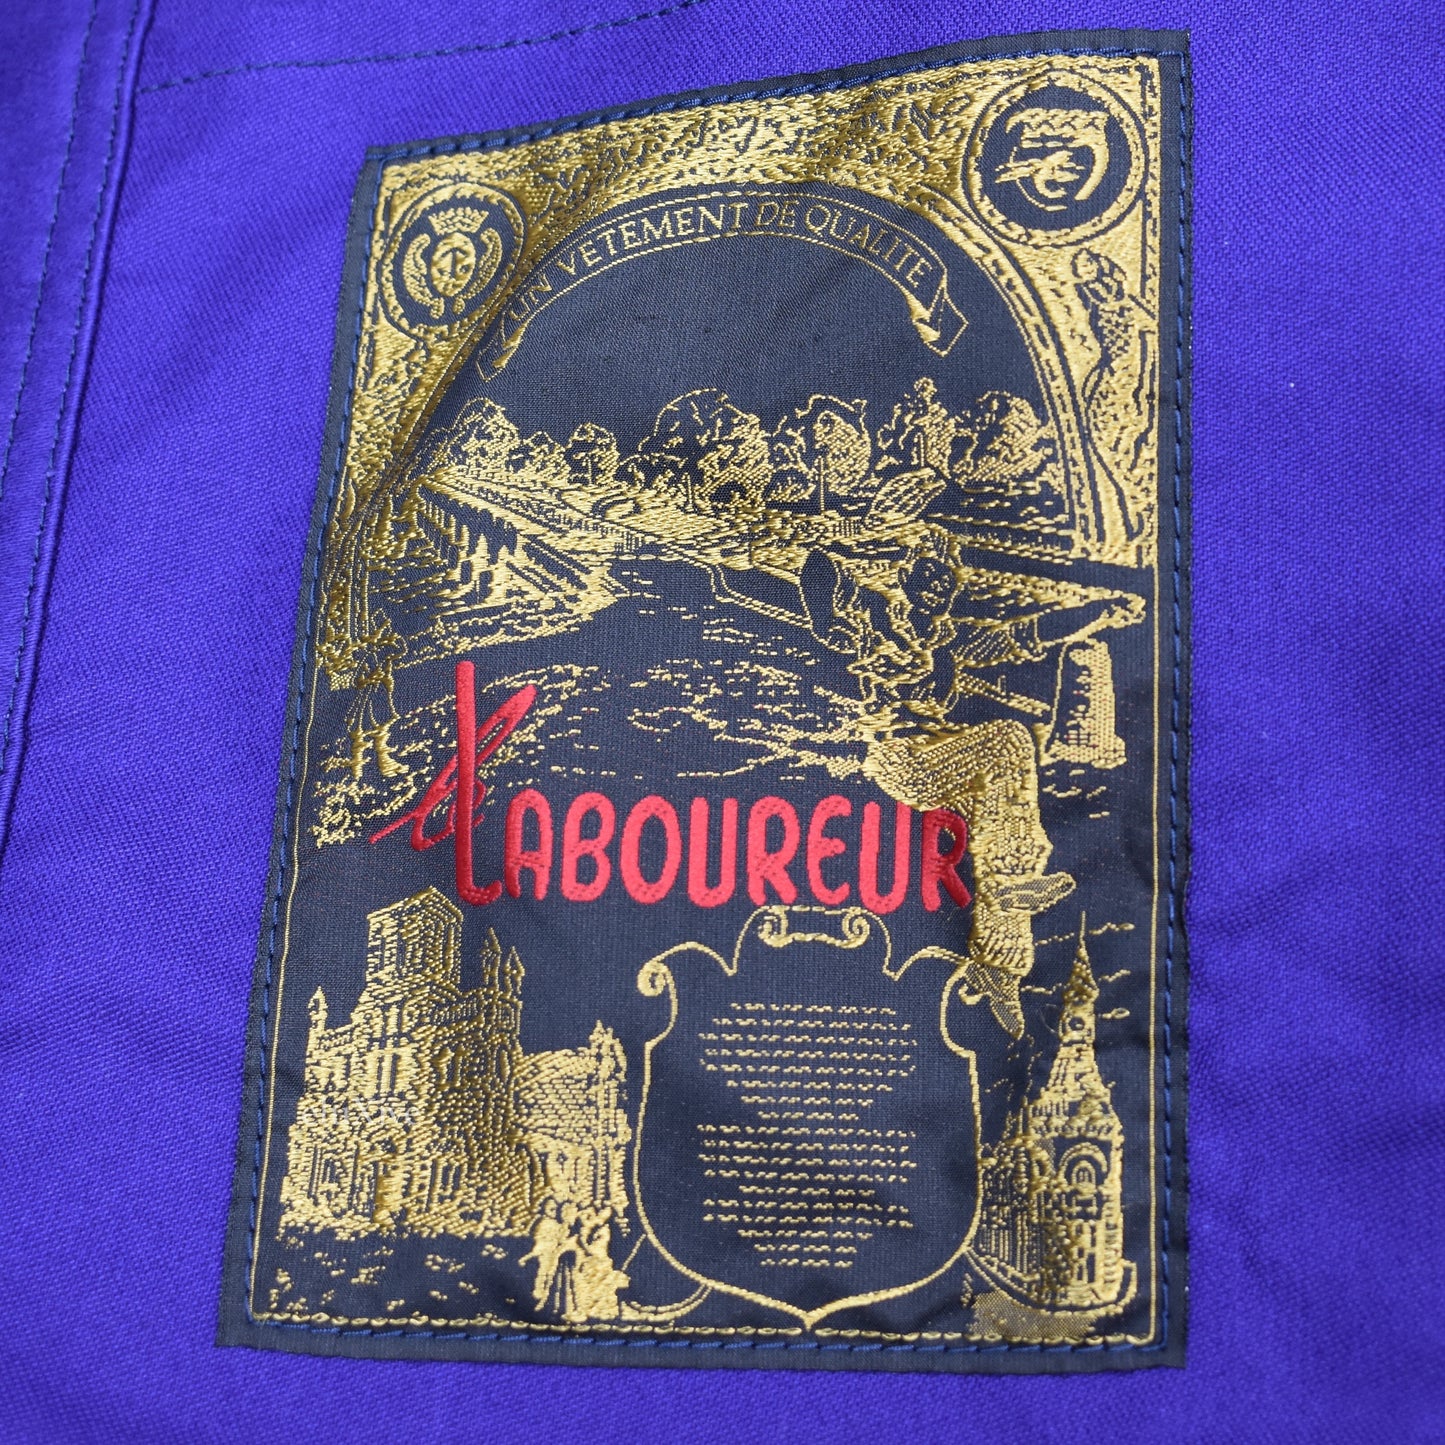 Comme des Garcons - Blue Logo Print Overcoat